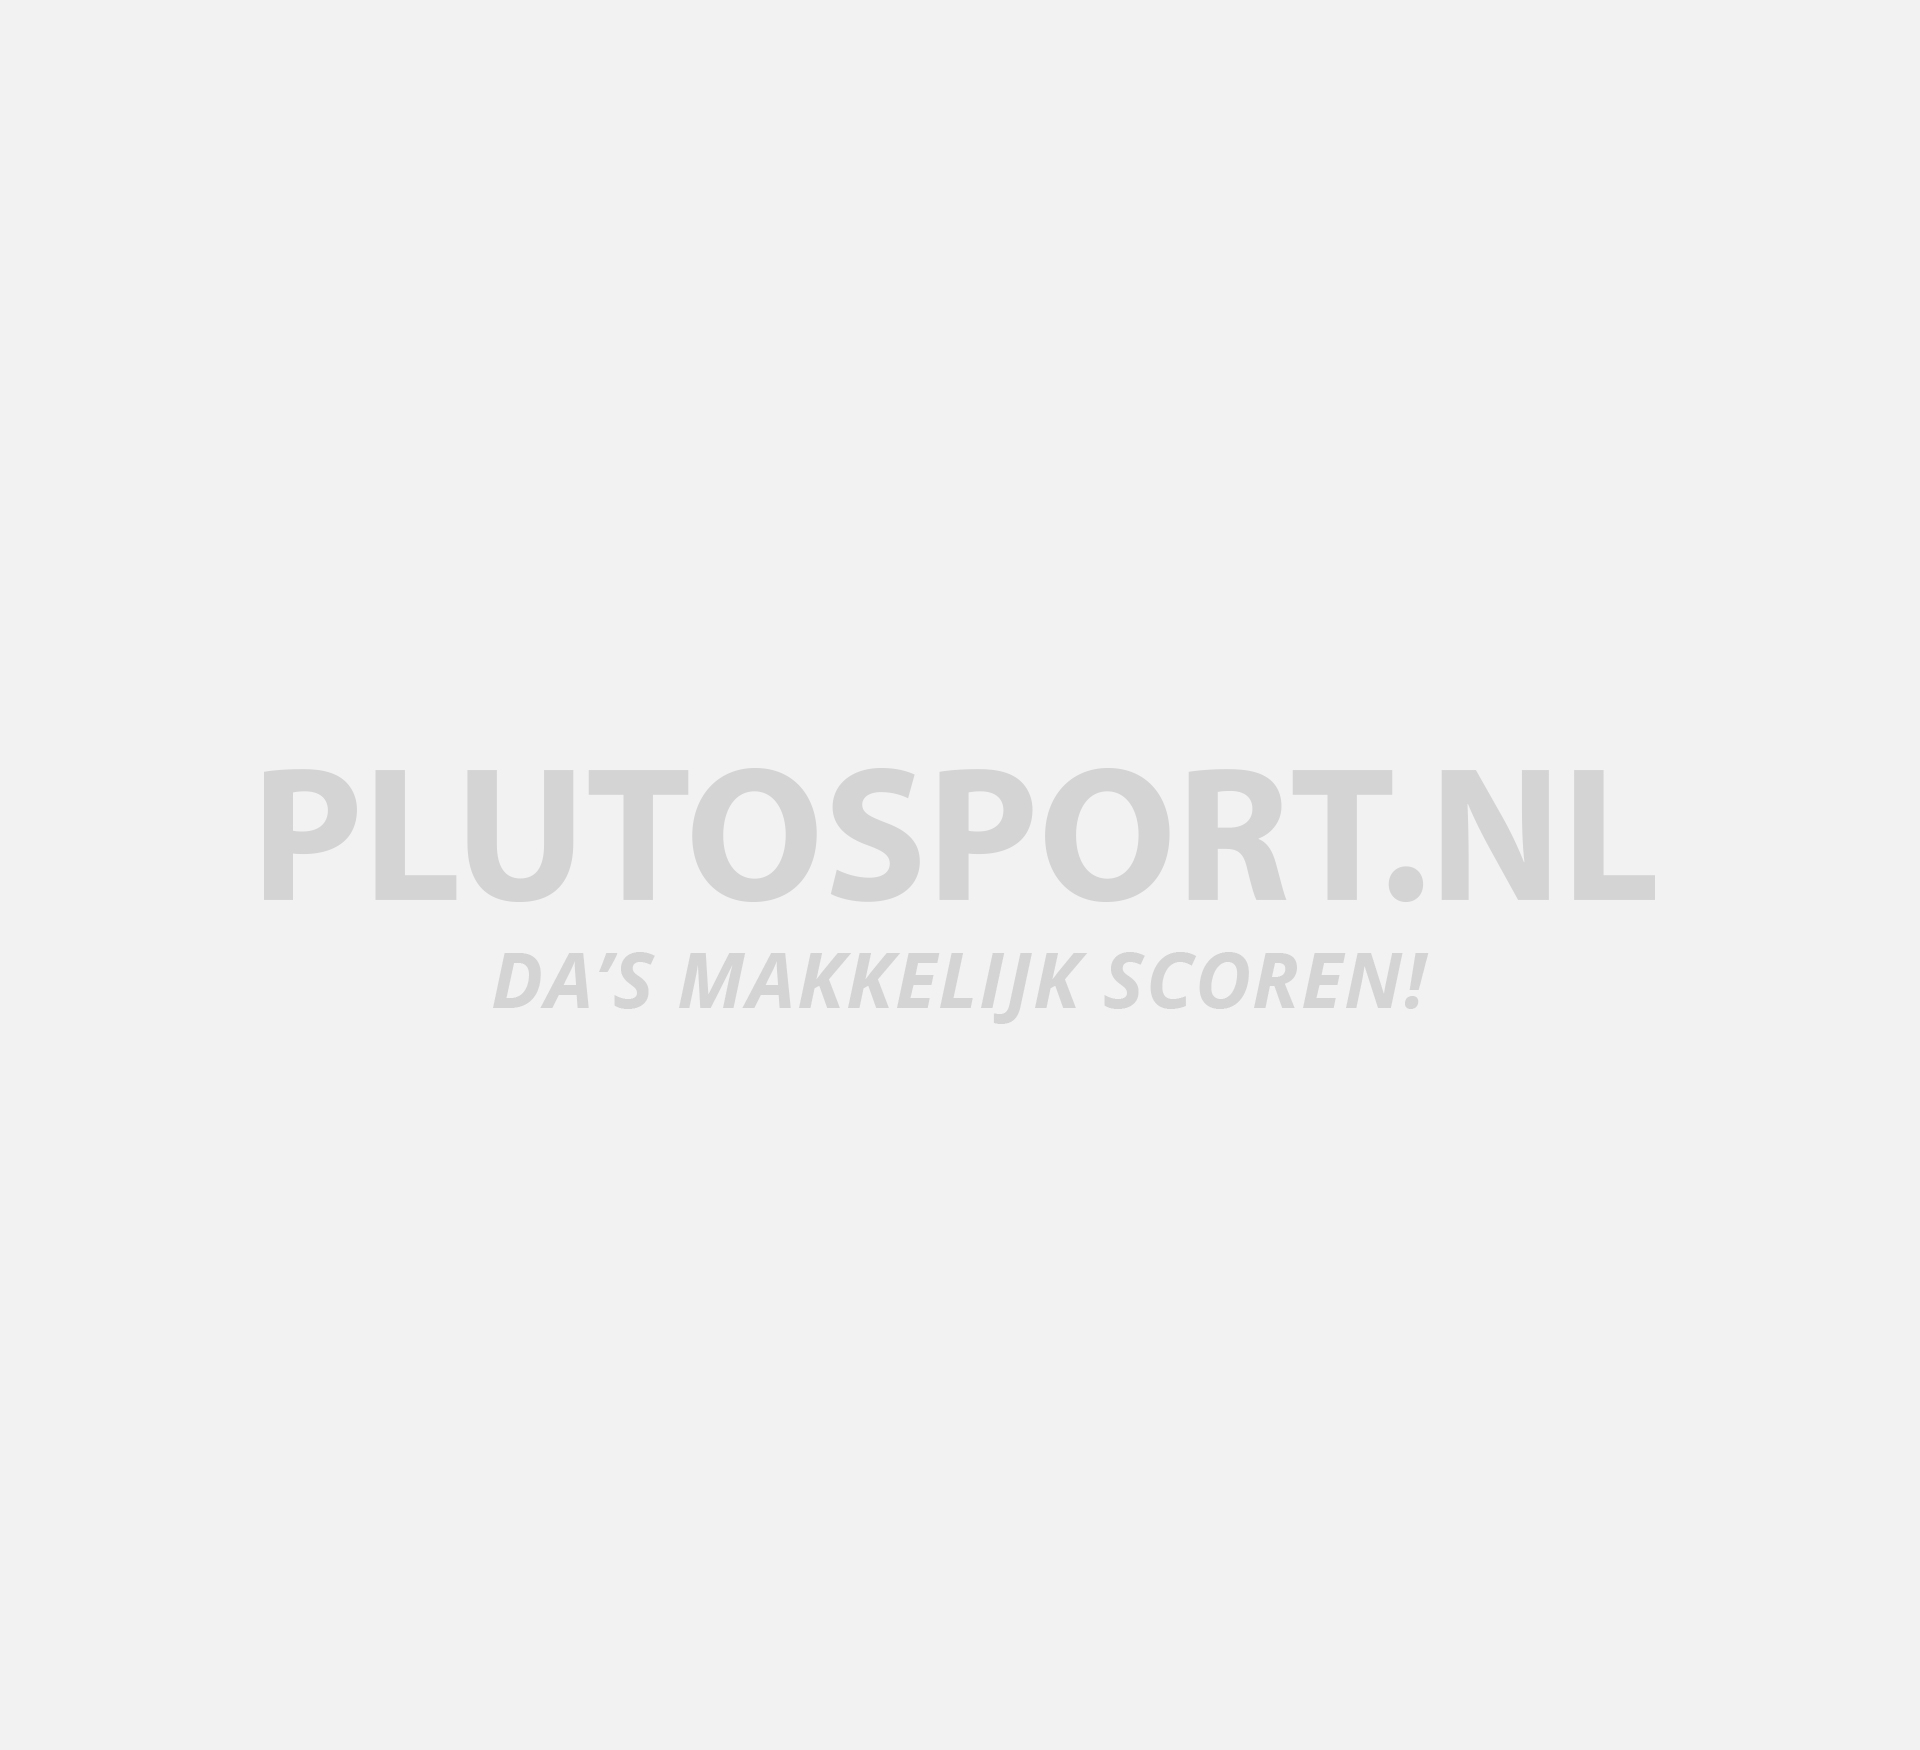 Oost zingen Kalksteen Nijdam Skate/Schaats Combo | Plutosport